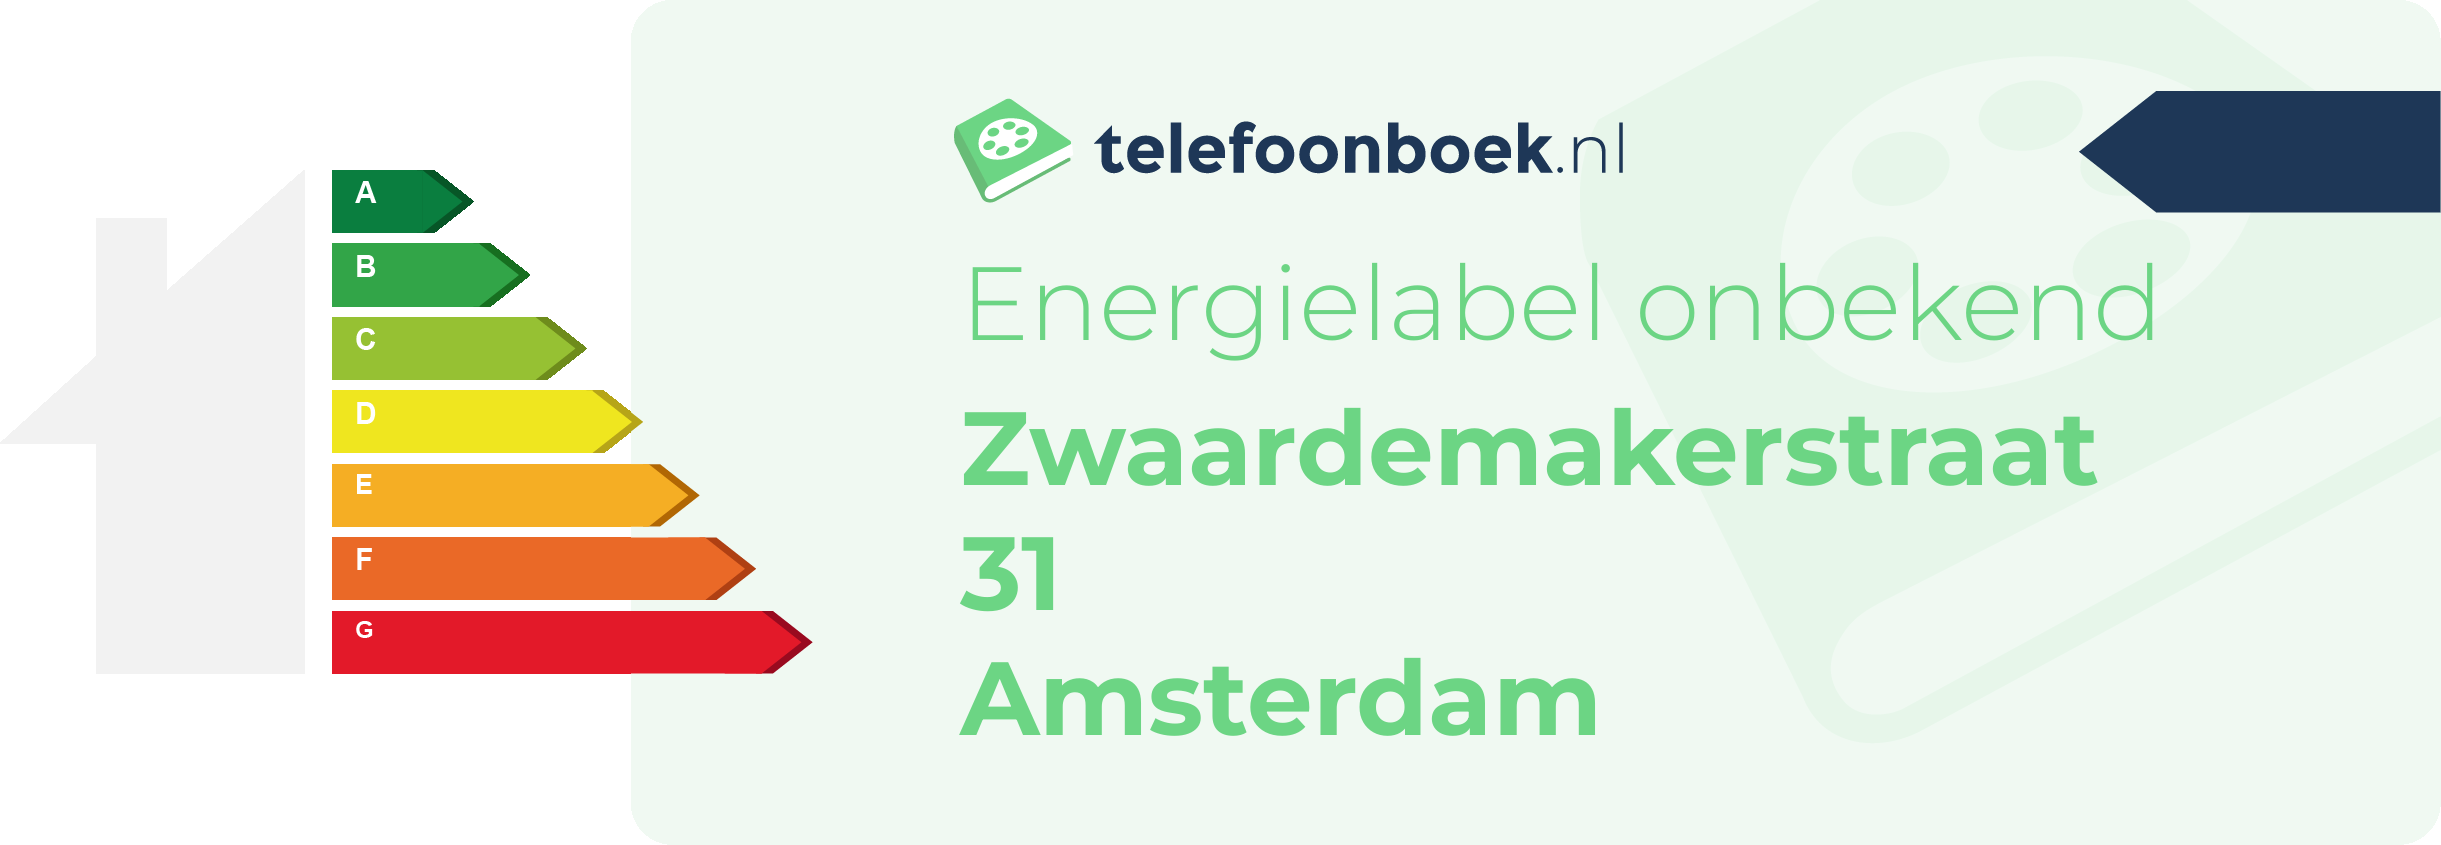 Energielabel Zwaardemakerstraat 31 Amsterdam